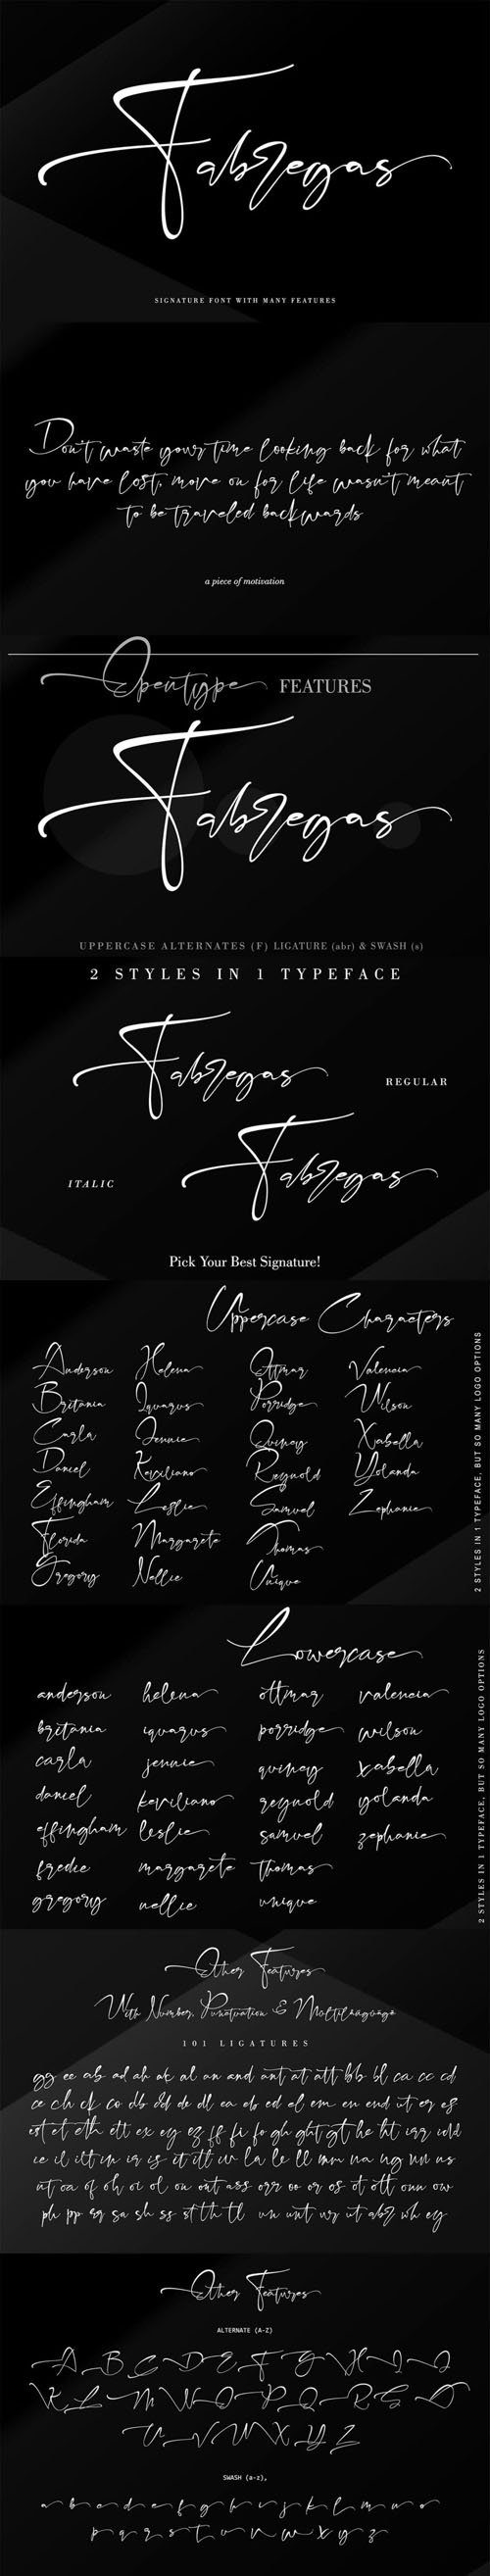 Fabregas Signature Font